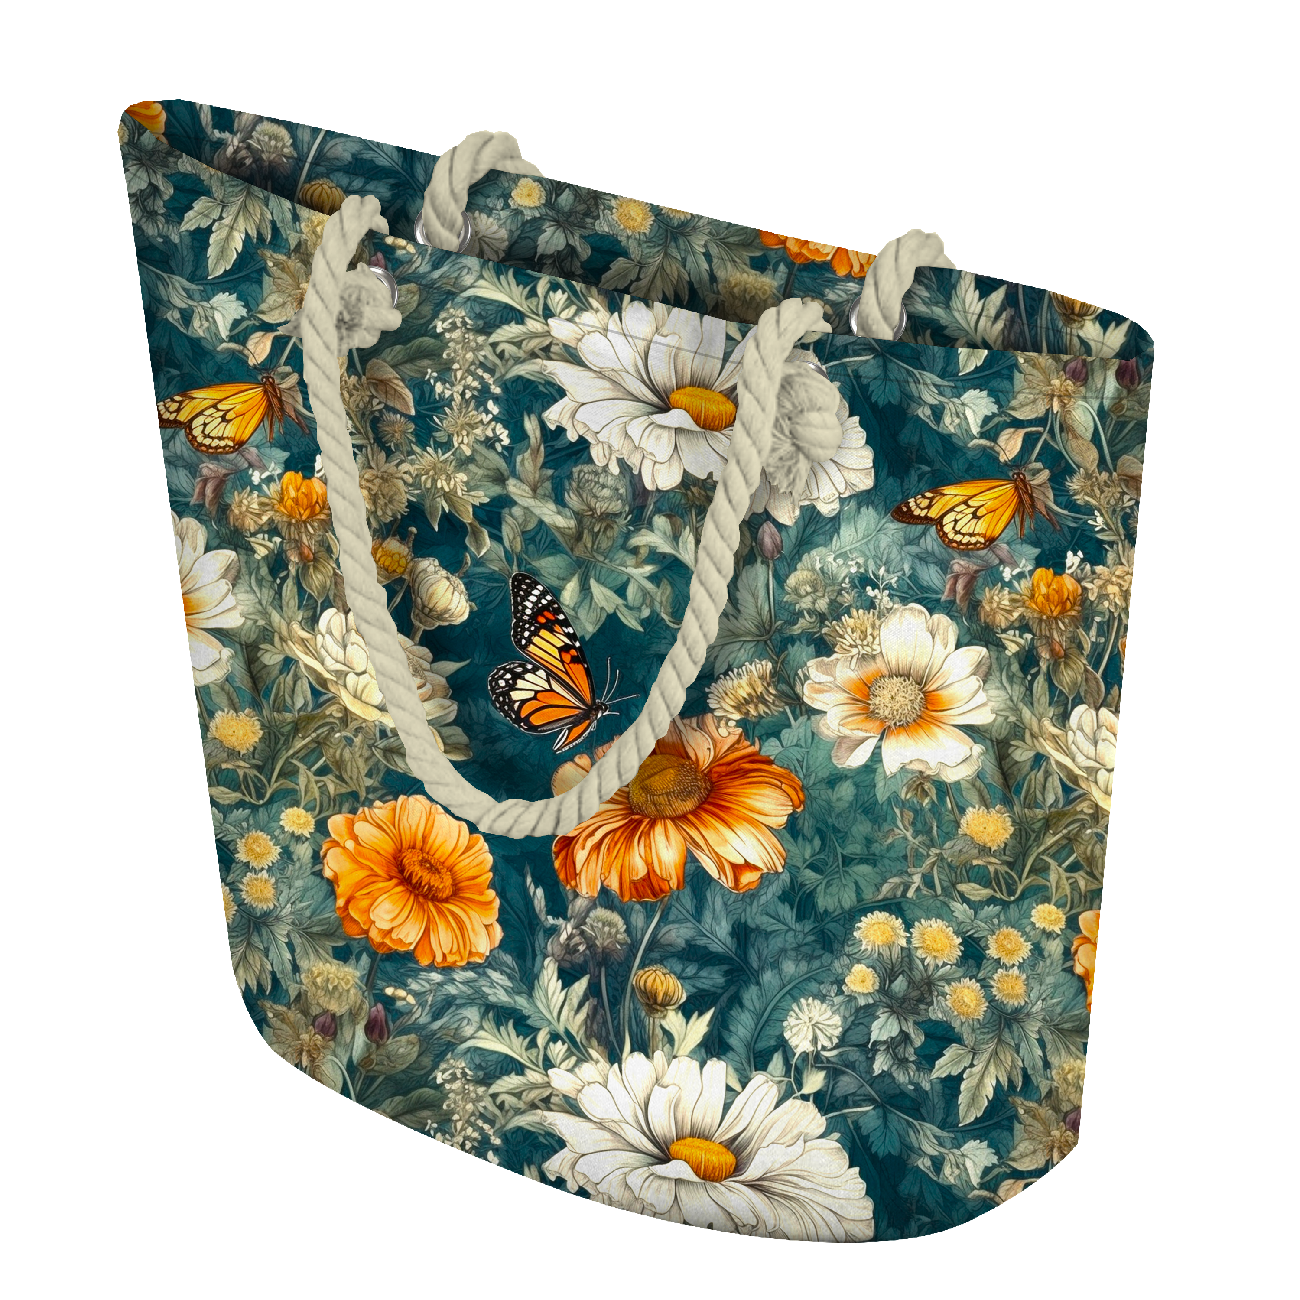 Butterfly & Flowers wz.1 - Waterproof woven fabric